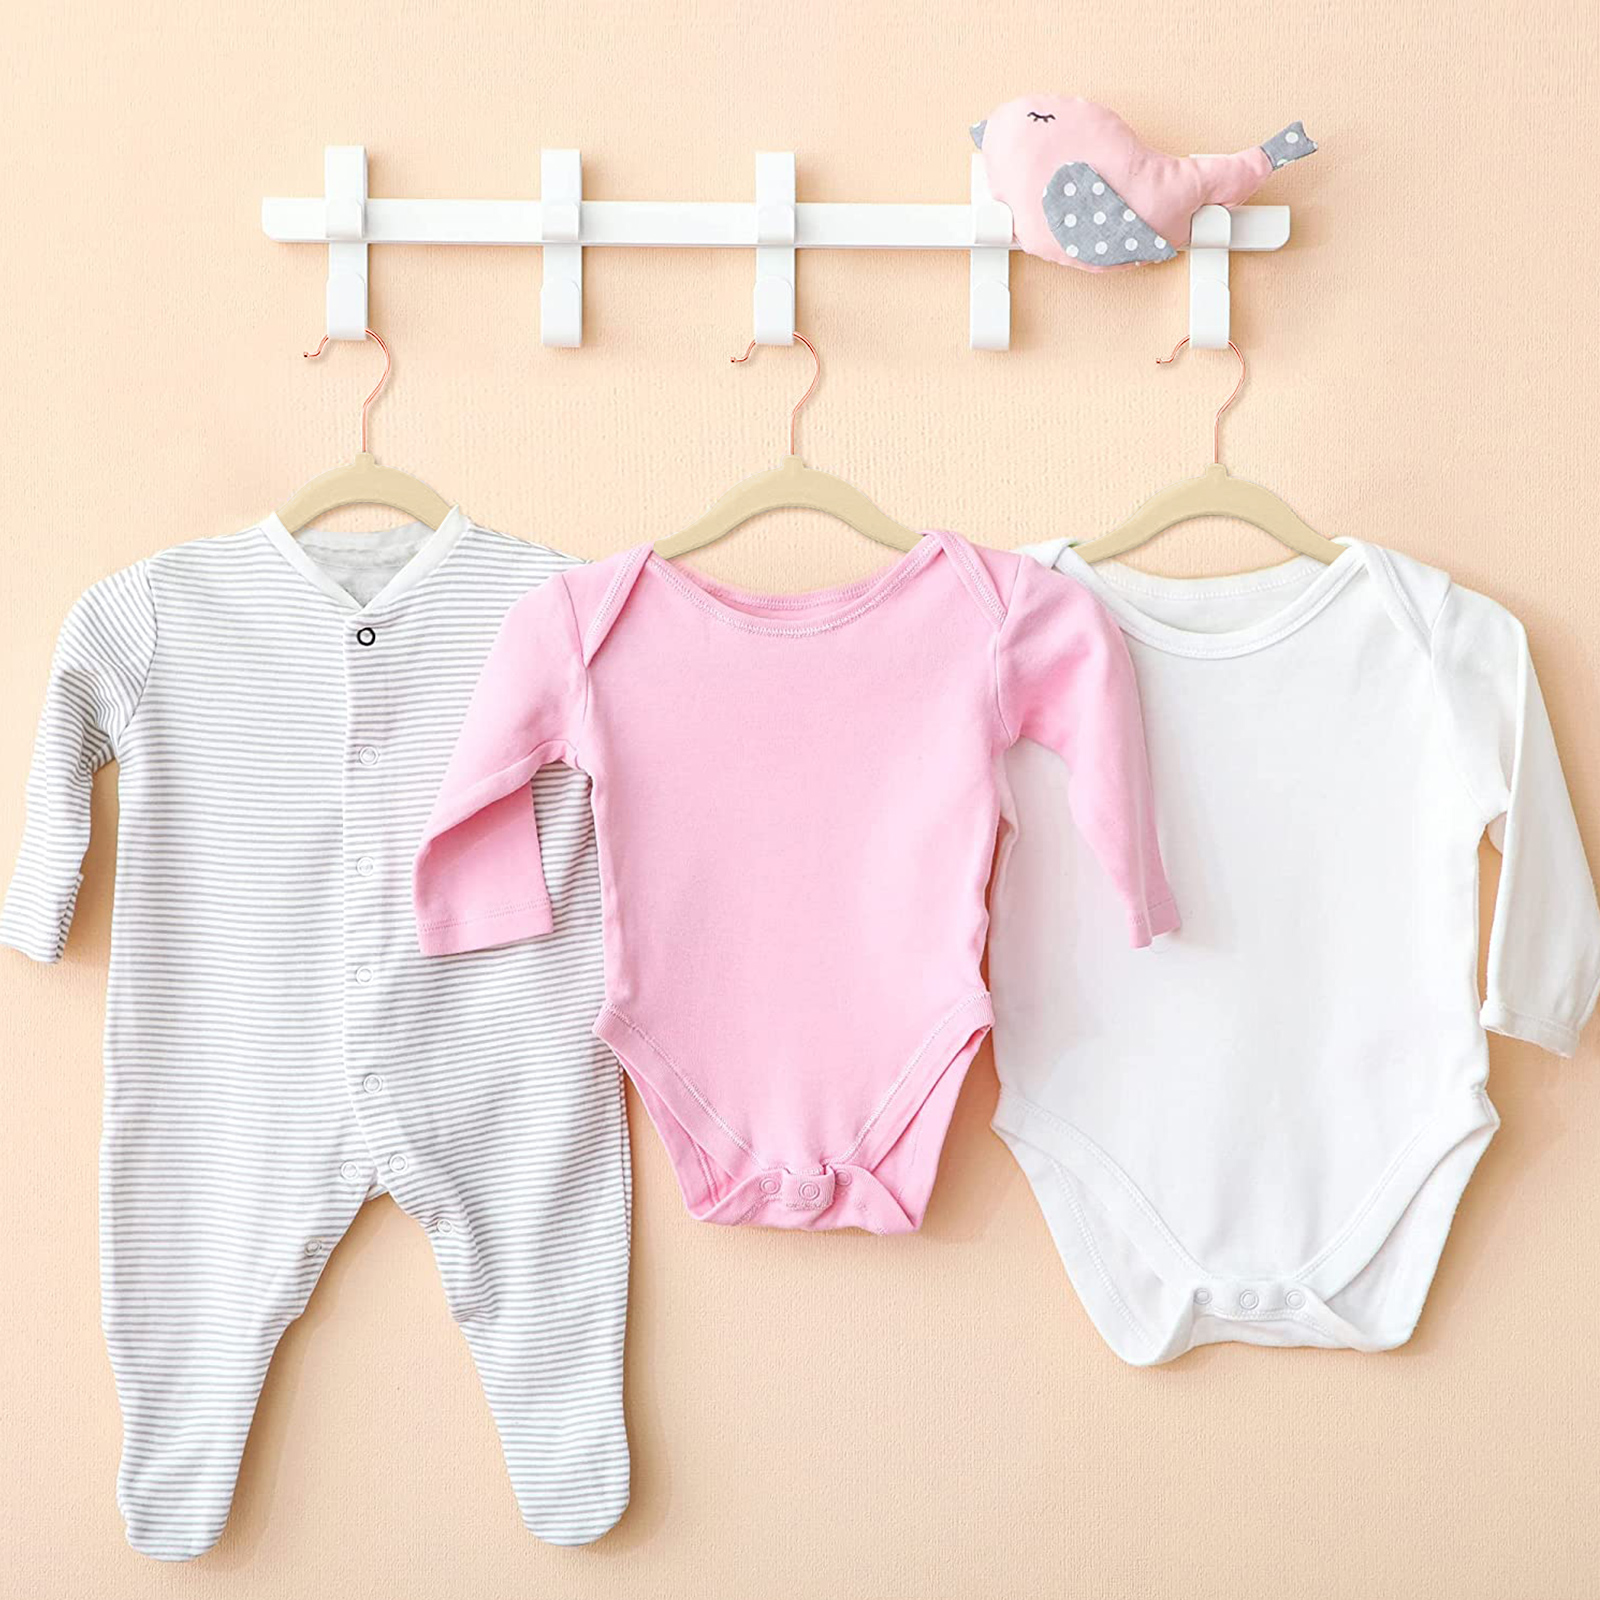 Mr. Pen- Plastic Kids Hanger, 20 Pack, White, Baby Hangers, Baby Hangers  for Closet, Baby Clothes Hangers - Mr. Pen Store